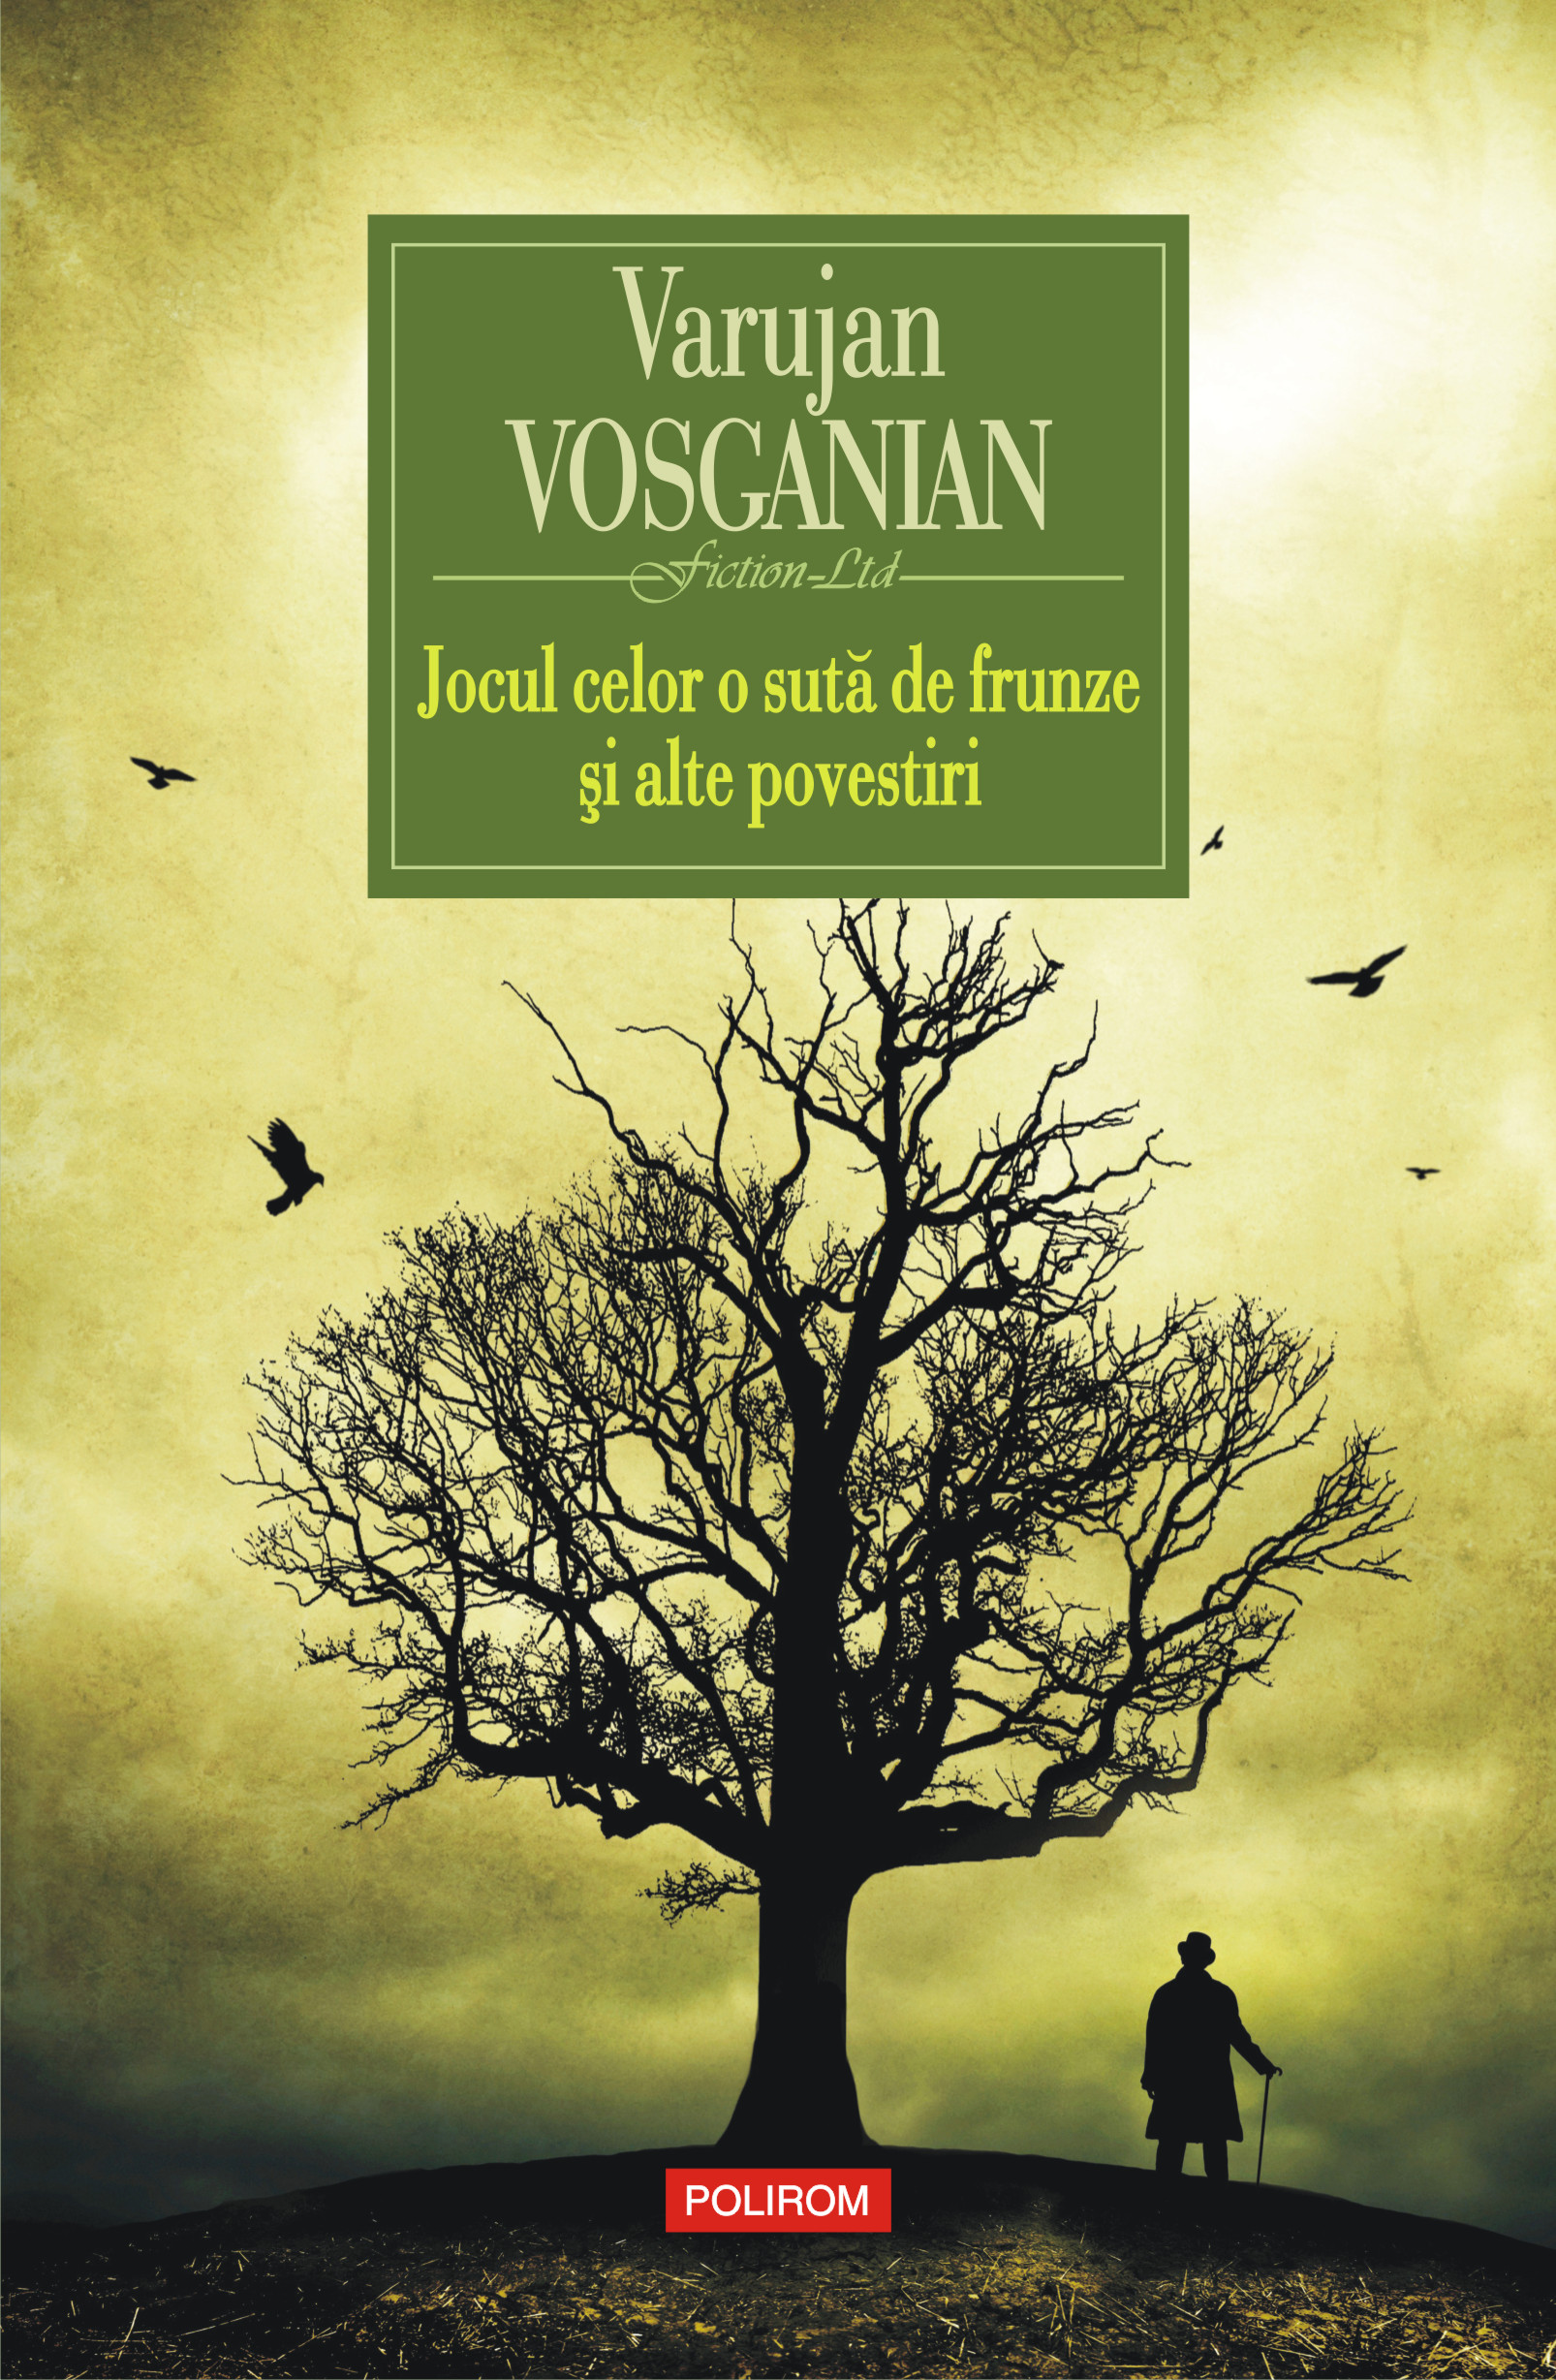 eBook Jocul celor o suta de frunze si alte povestiri - Varujan Vosganian